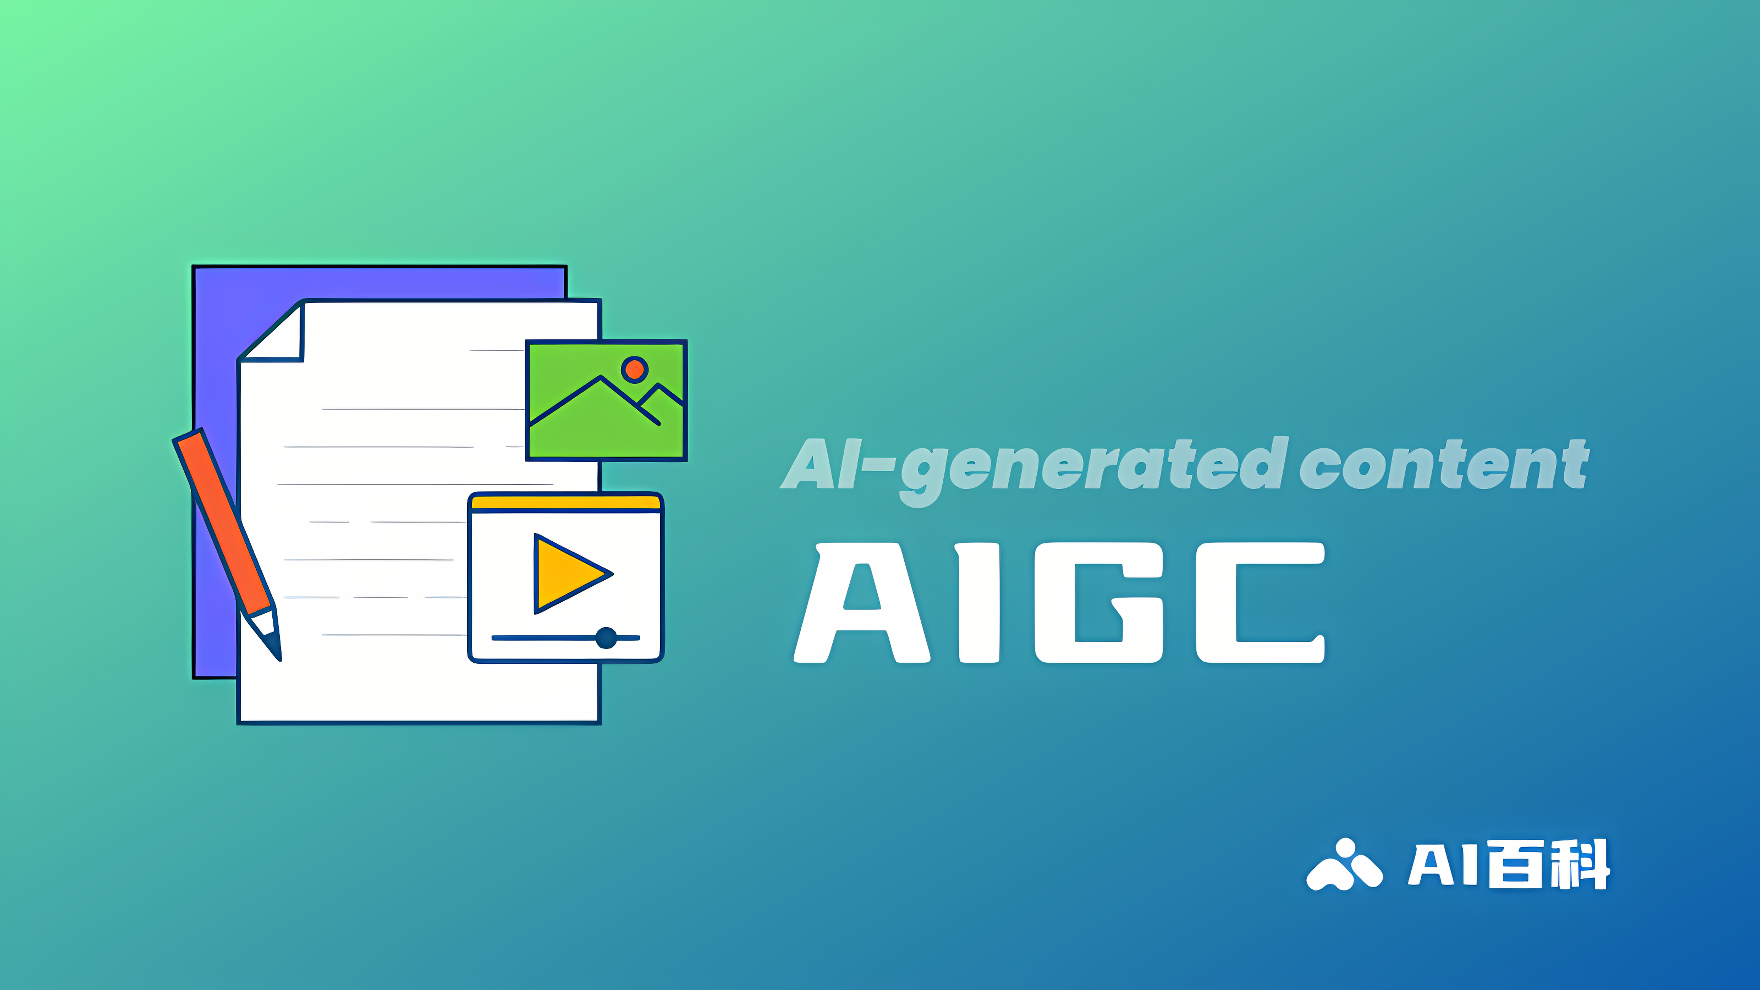 图片展示了几张堆叠的文件、一支铅笔以及标有“AI-generated content AIGC”文字的图标，背景是渐变的绿蓝色。